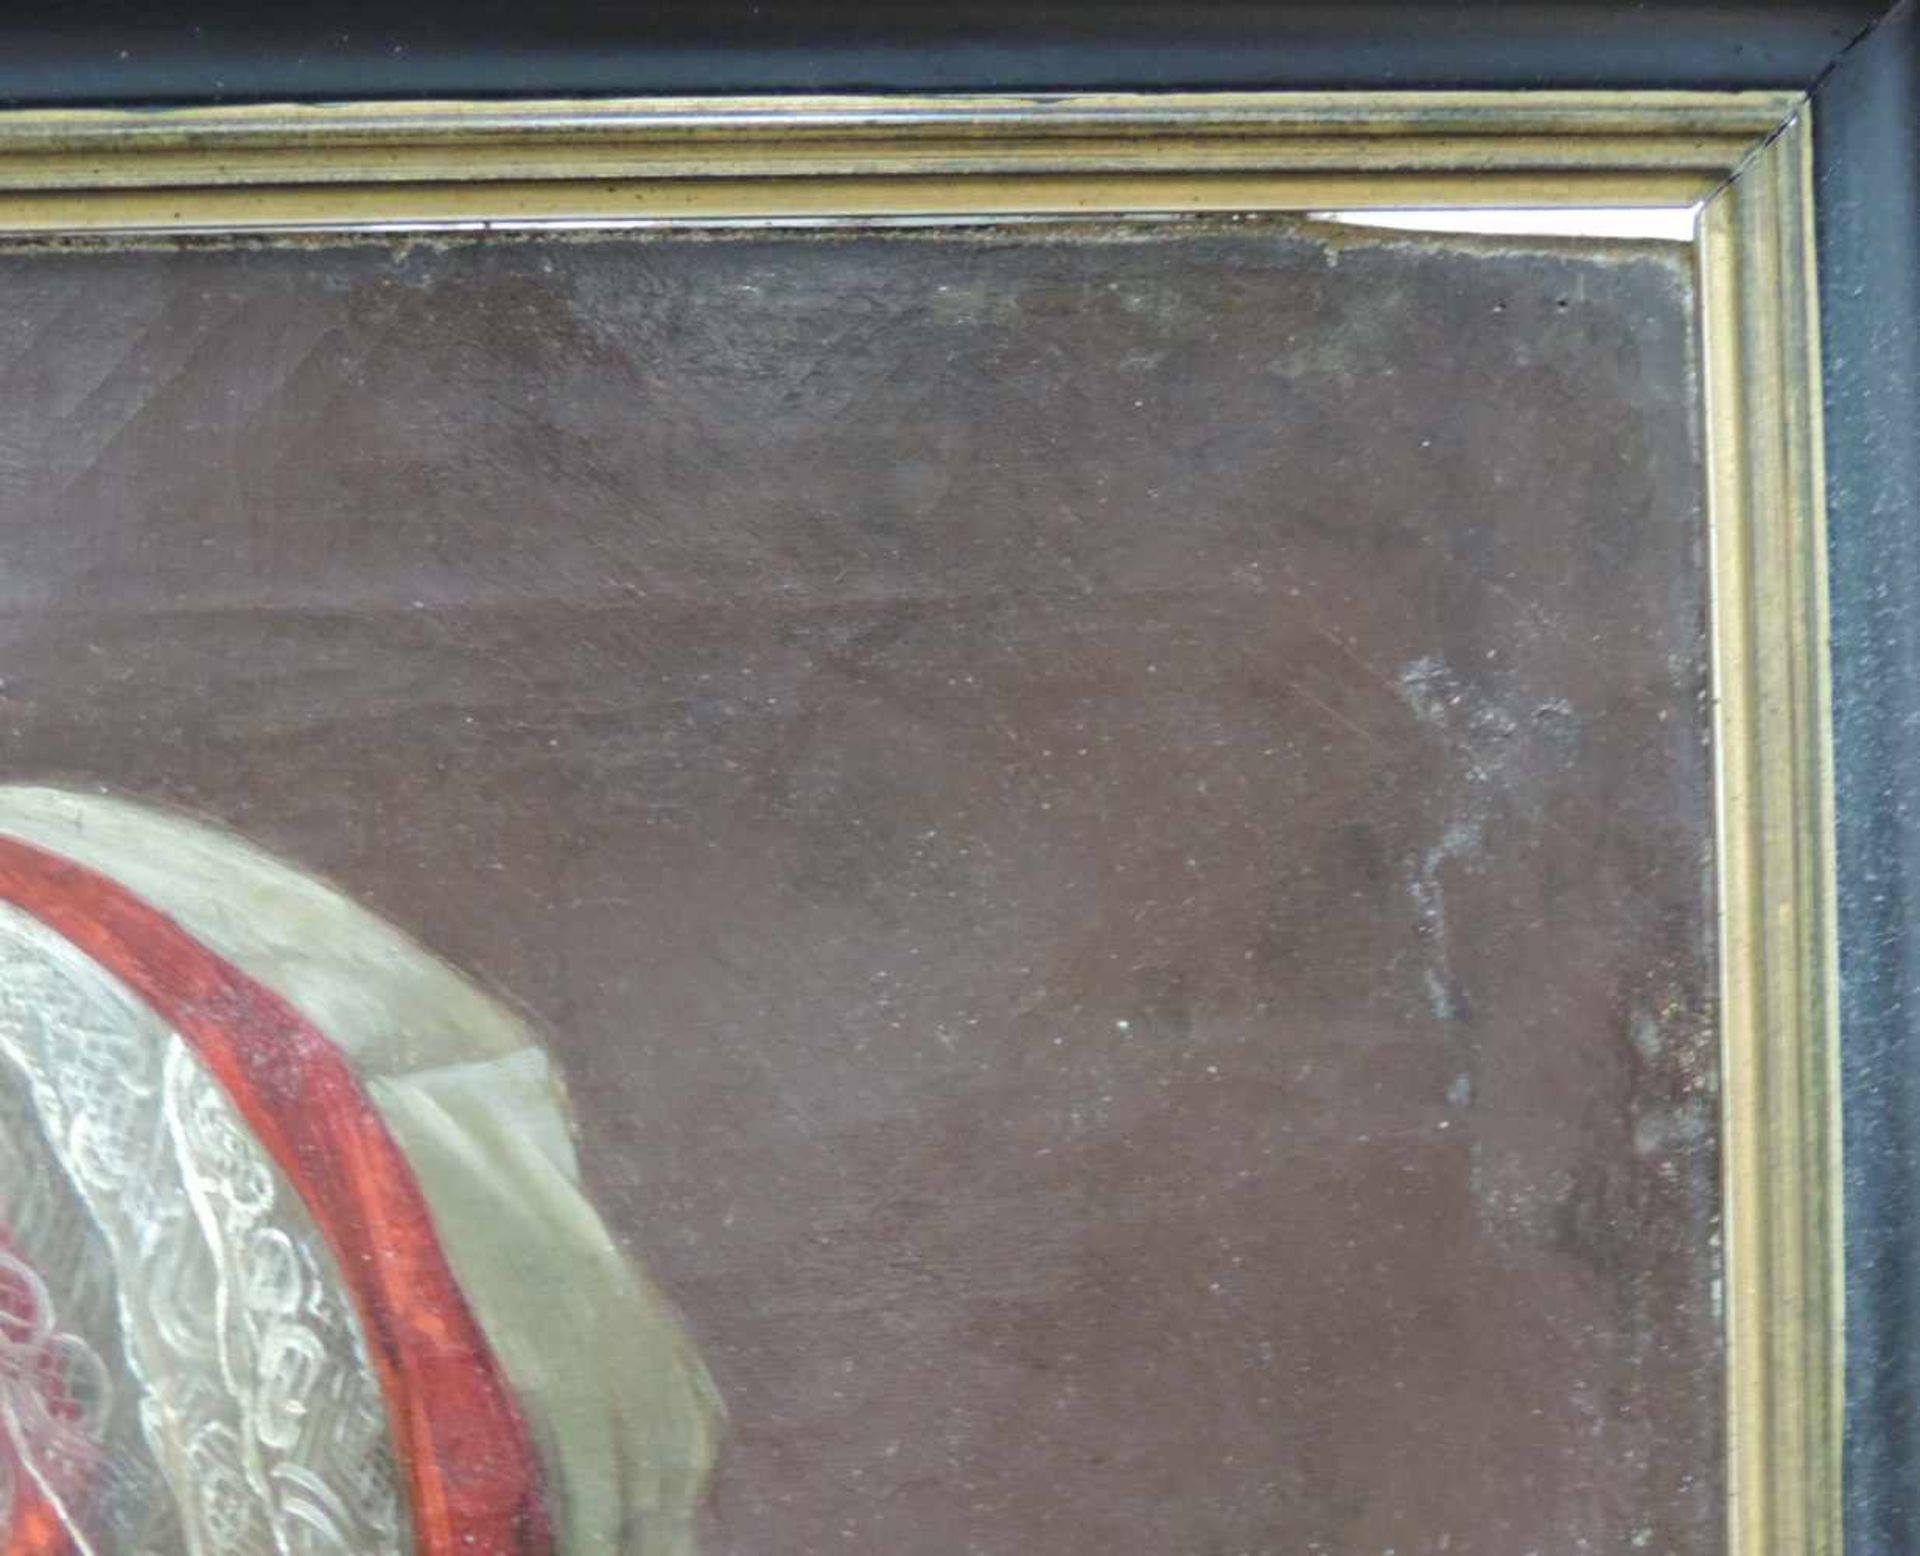 Clemens BEWER (1820 - 1884). Halb- Portrait einer Dame mit Spitzenhaube, 1848.65 cm x 53 cm. - Bild 5 aus 6